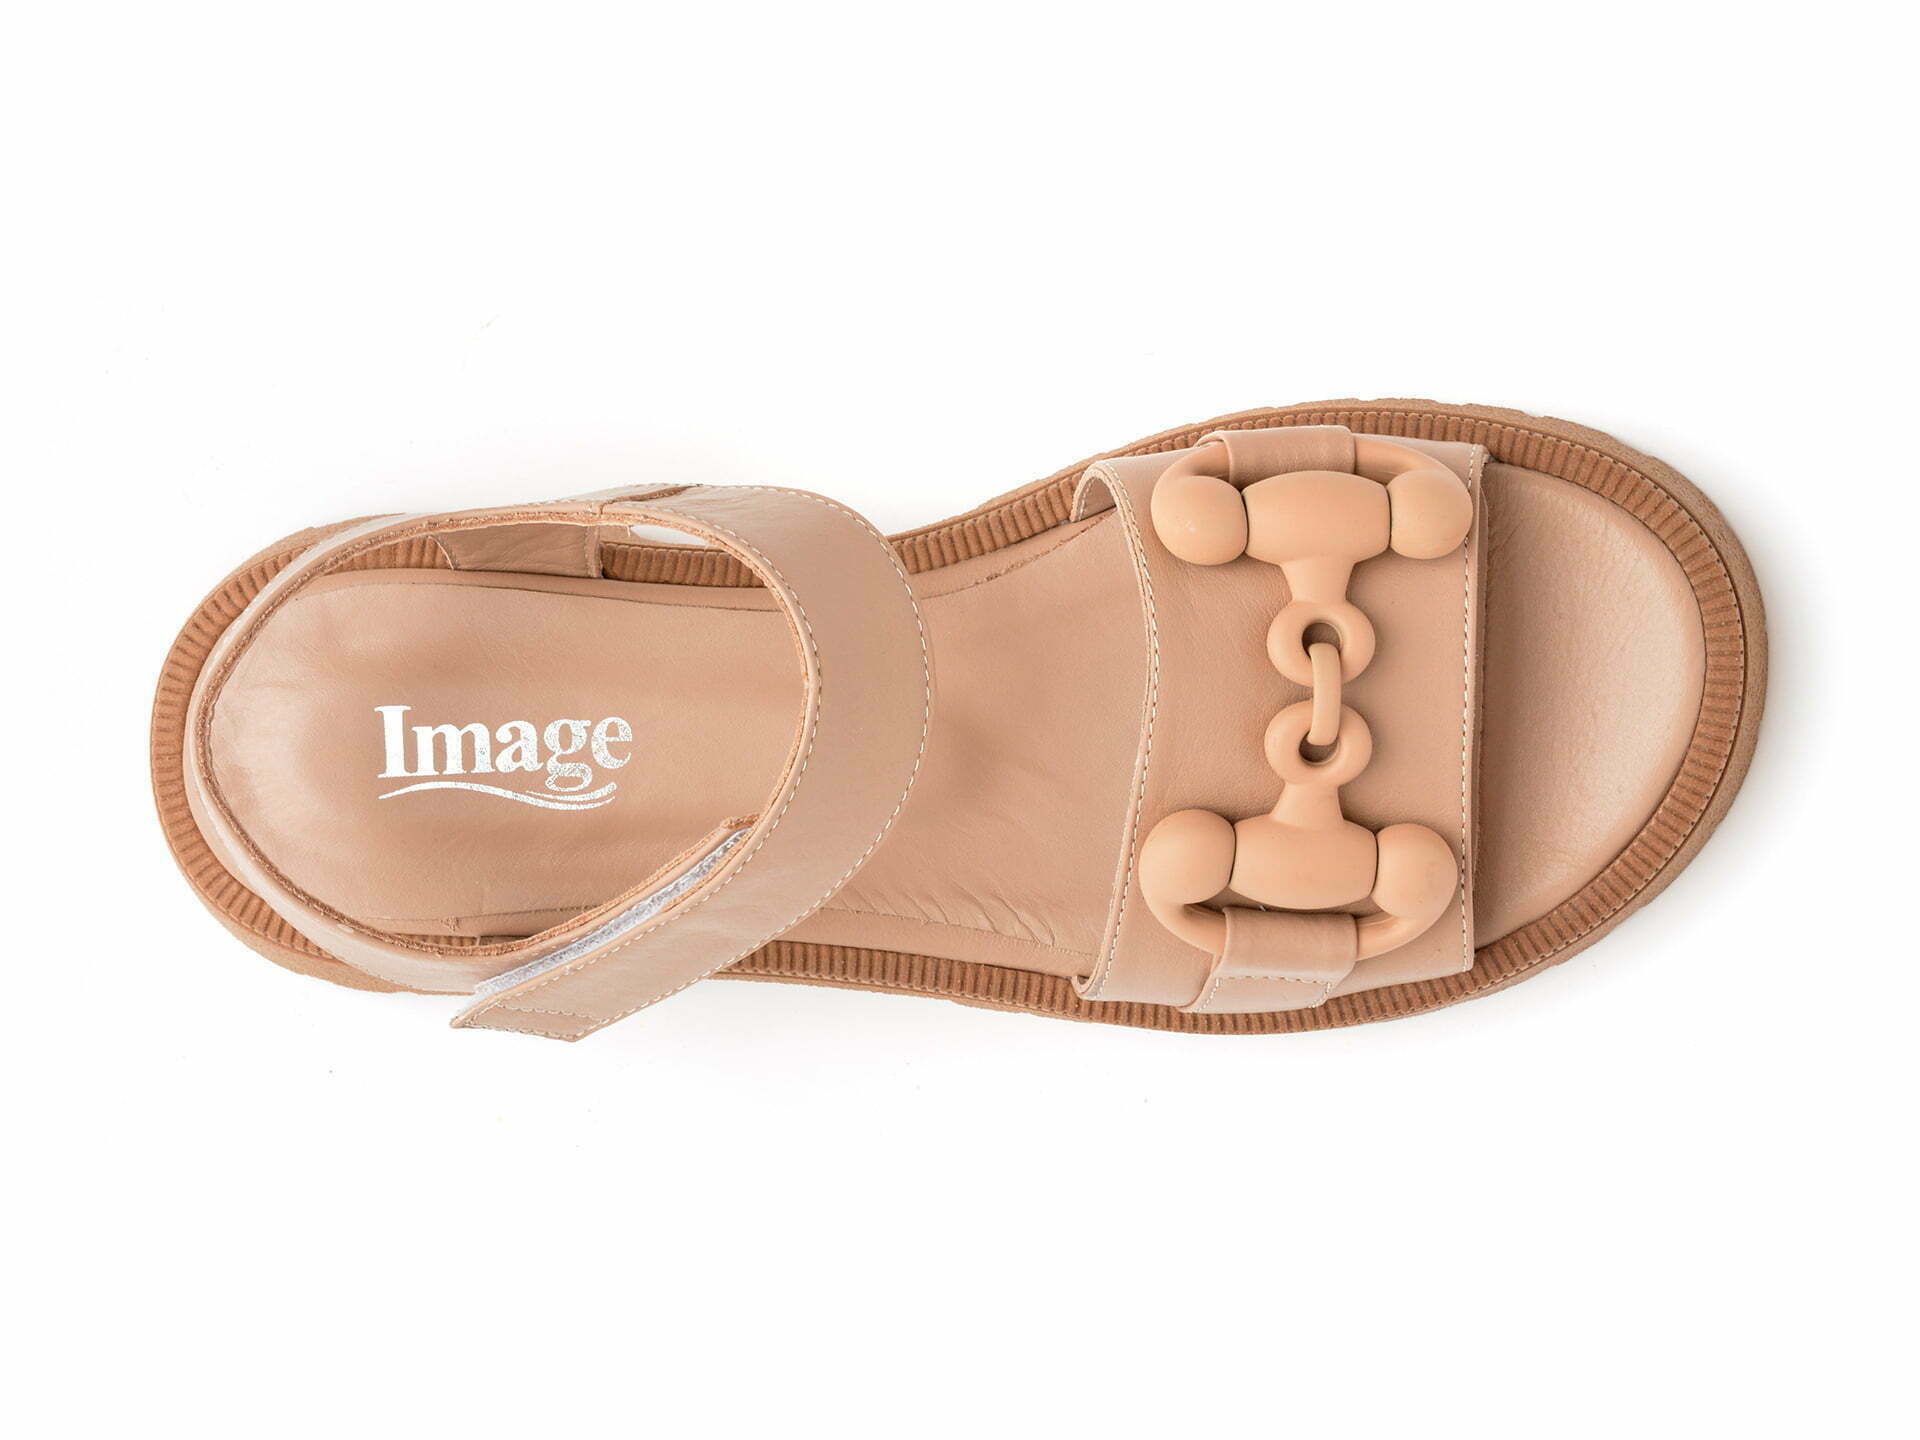 Comandă Încălțăminte Damă, la Reducere  Sandale IMAGE maro, 2532141, din piele naturala Branduri de top ✓